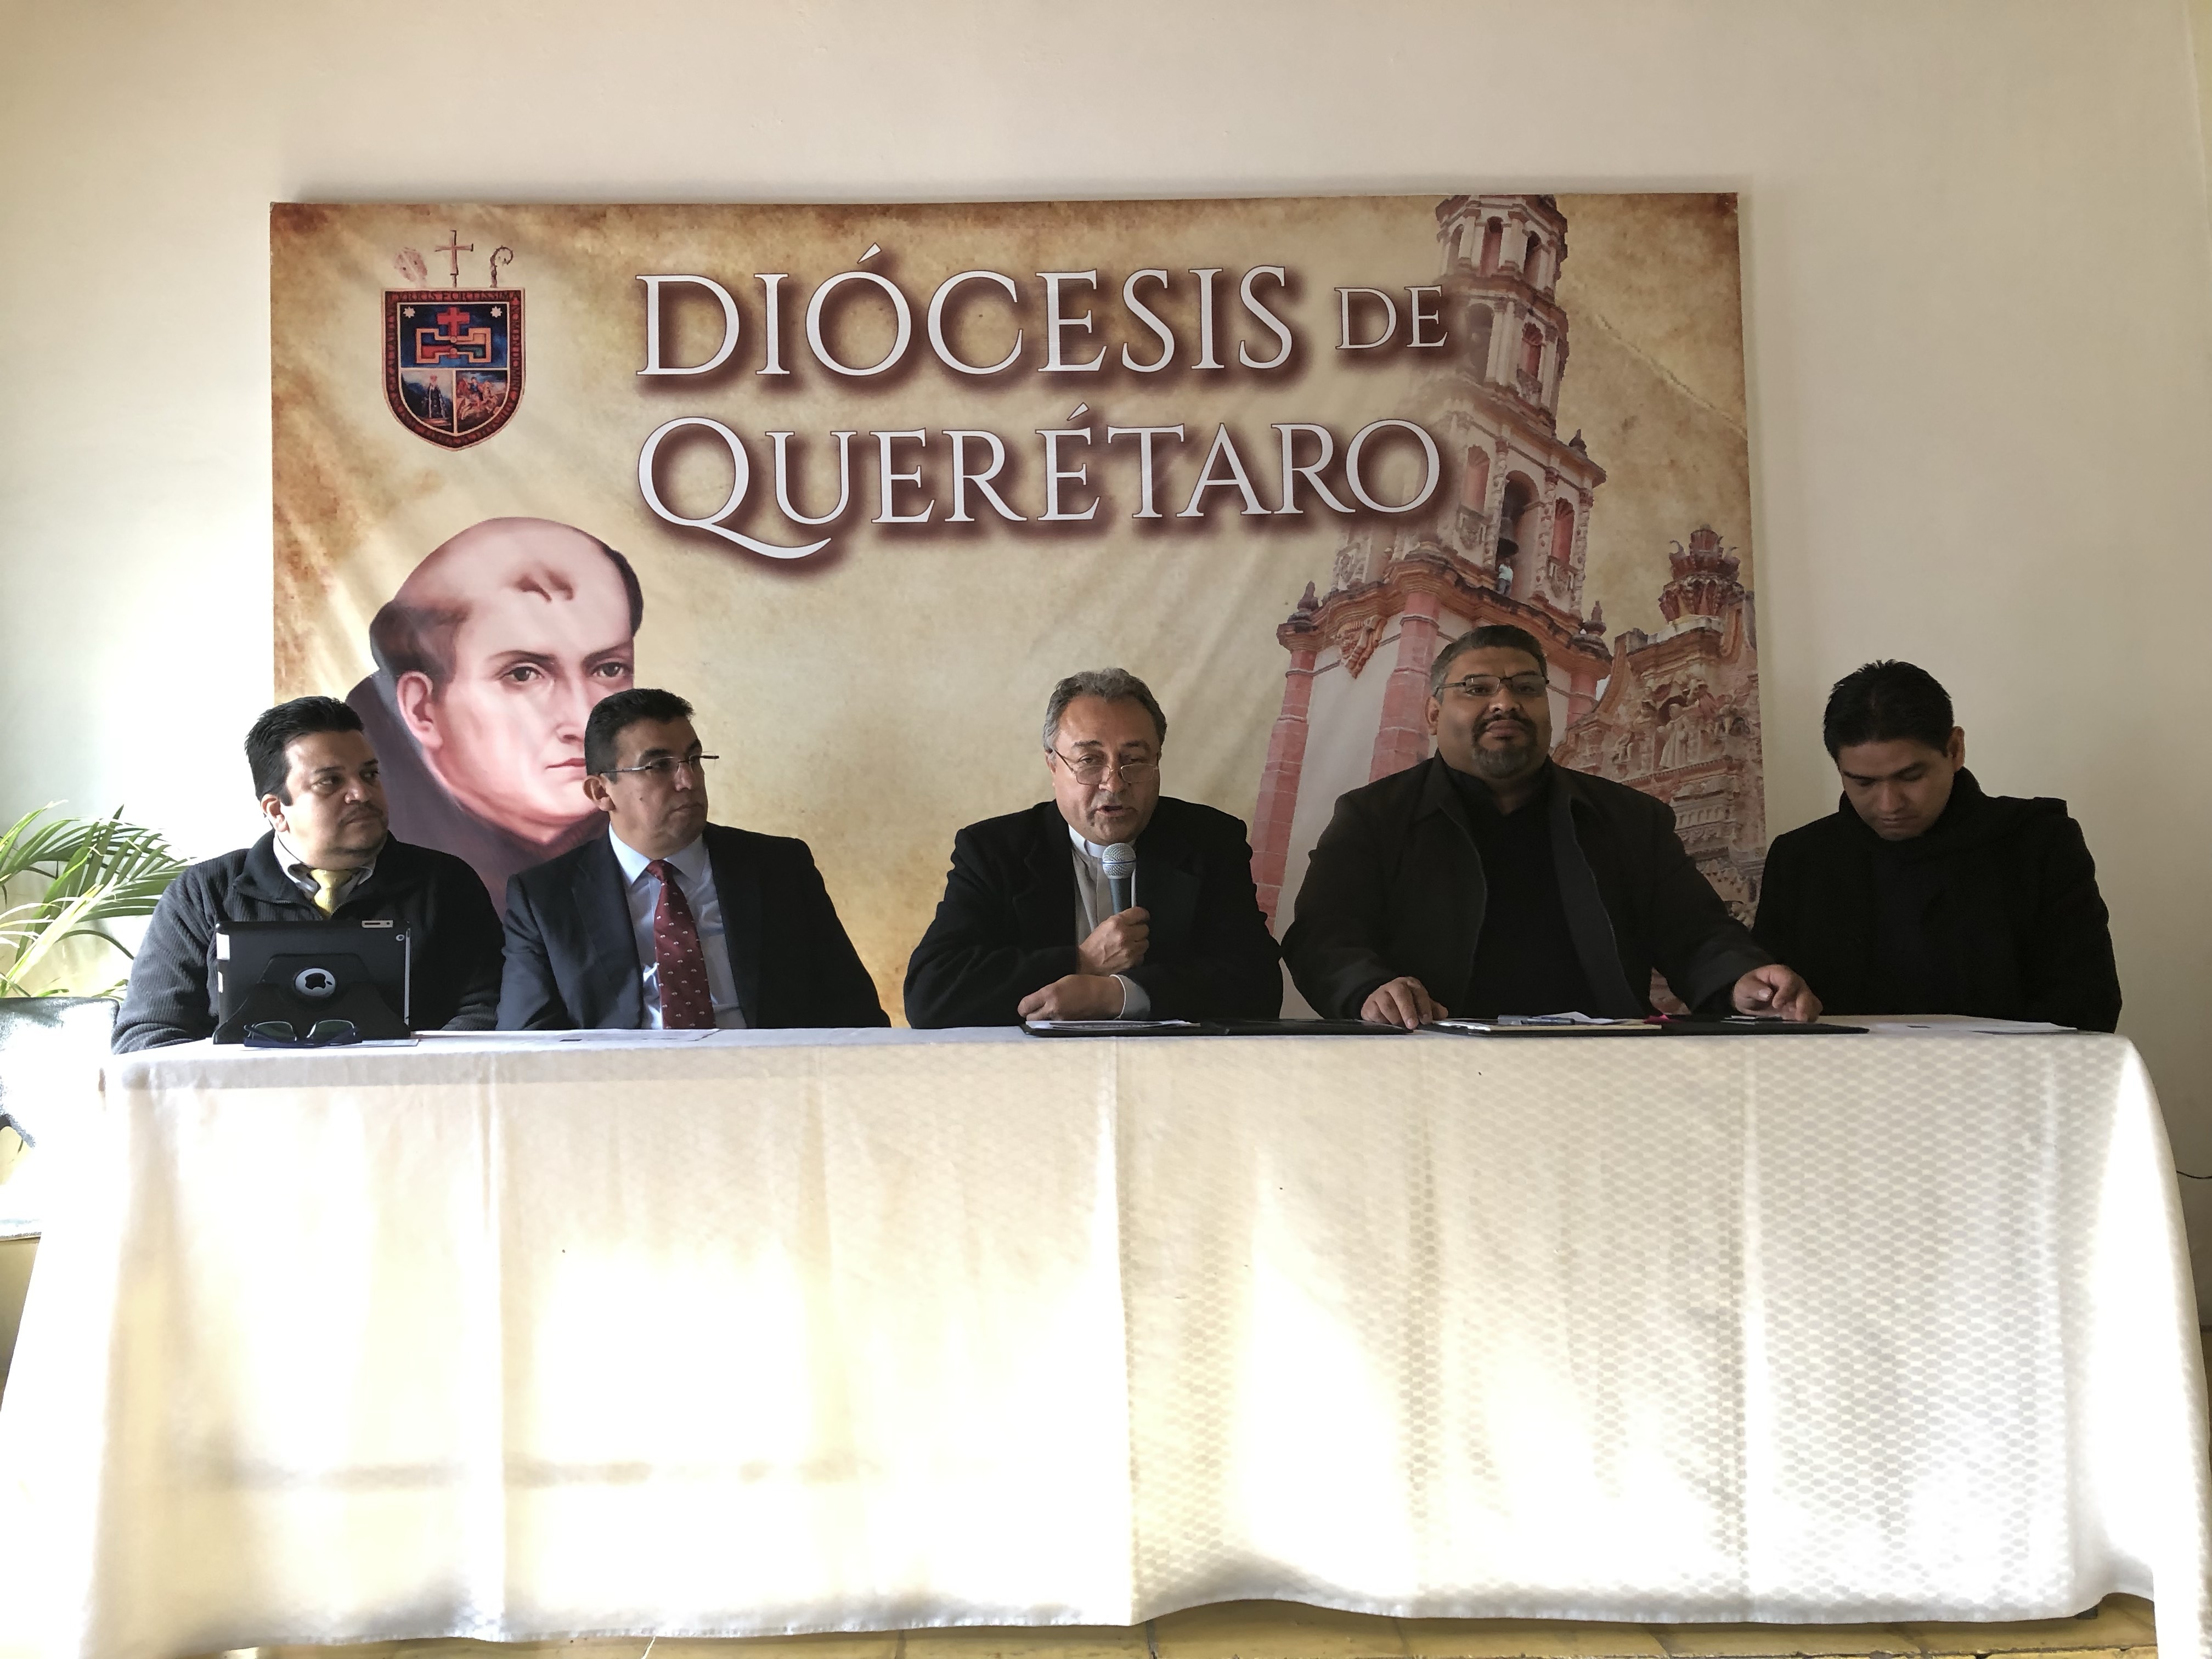  Alistan foro por la libertad religiosa y laicidad en Querétaro